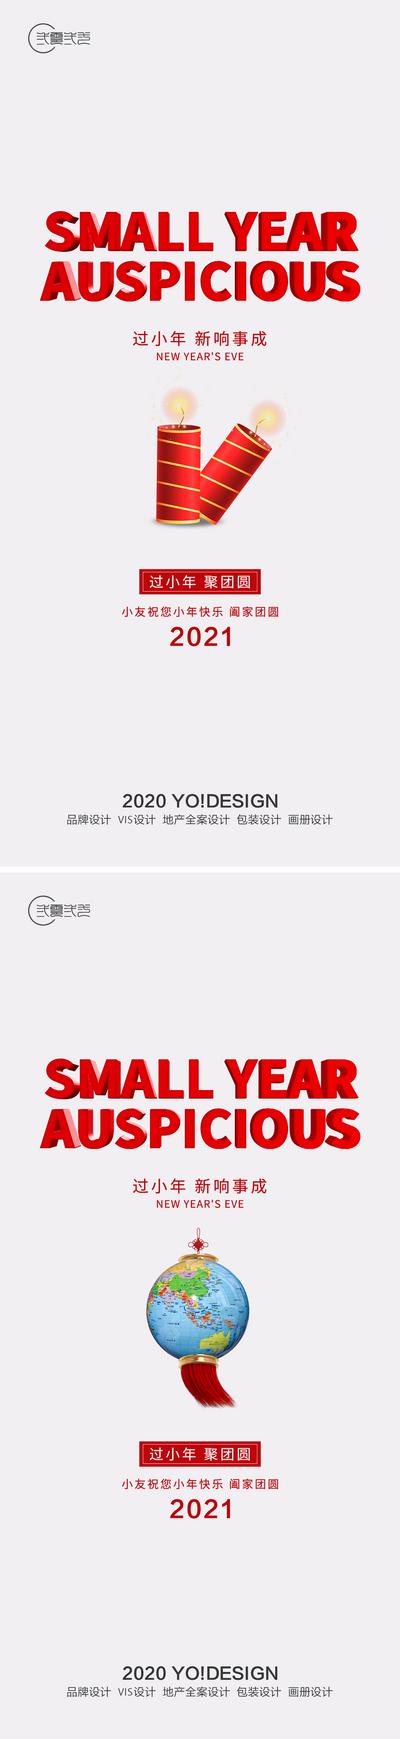 【南门网】海报 中国传统节日 2021 小年 蜡烛 地球仪 简约